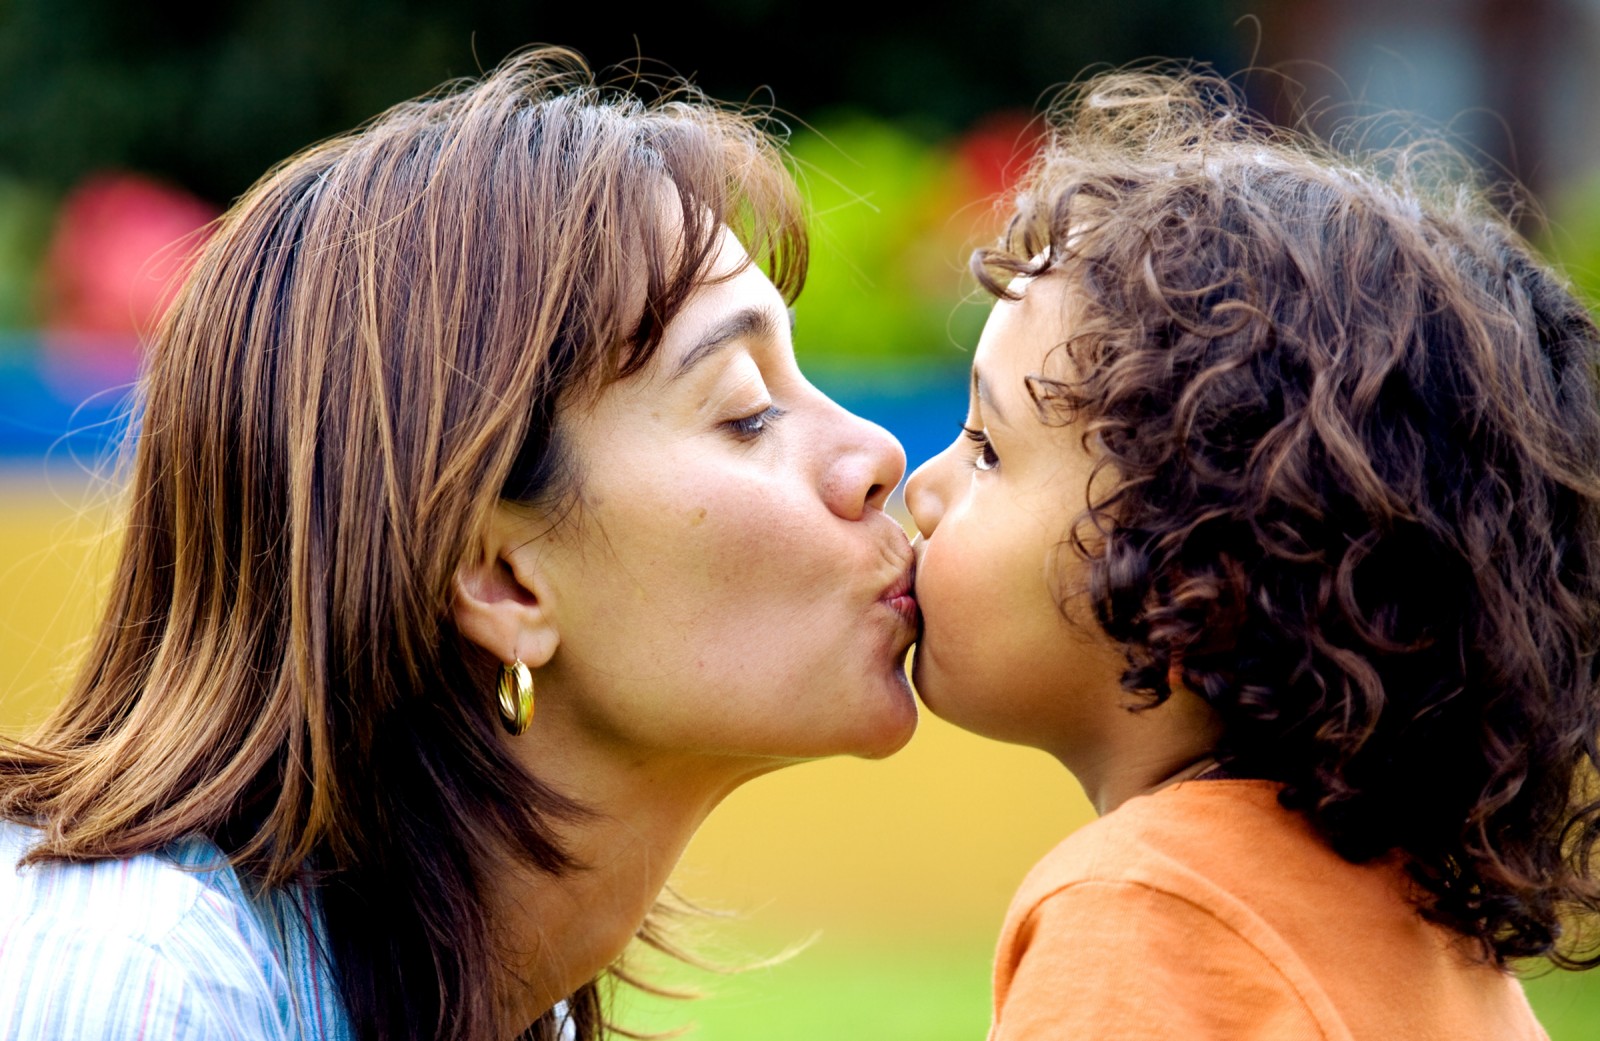 Лесбиянки про мамы. Поцелуй девочки с мамой. Французский поцелуй детей. Женщина целует ребенка в губы. Детский поцелуй в губы с мамой.